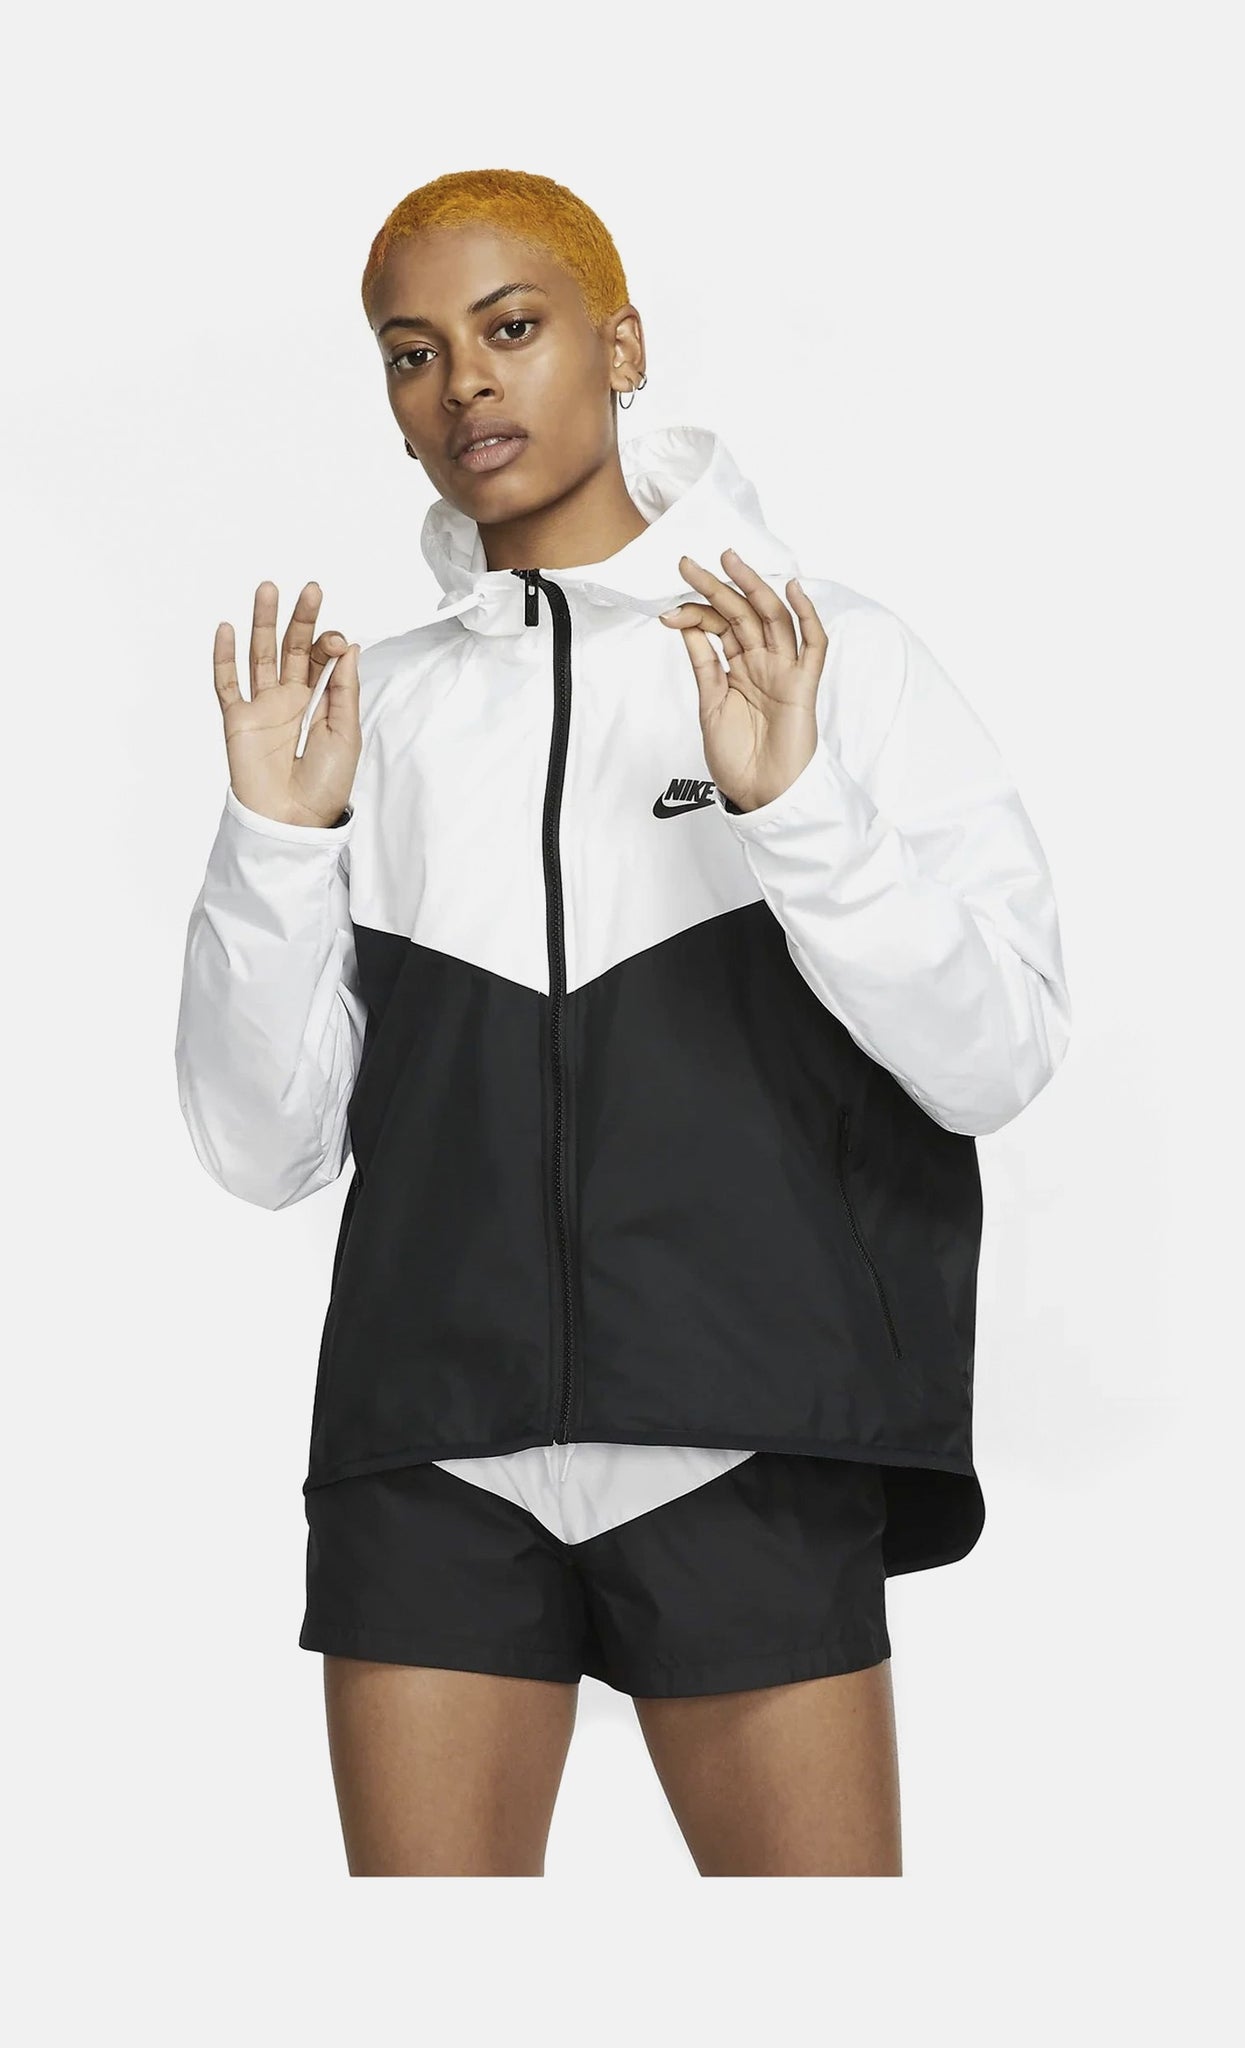 Nike Women's Sportswear Woven Windrunner Jacket In Blue Size Small